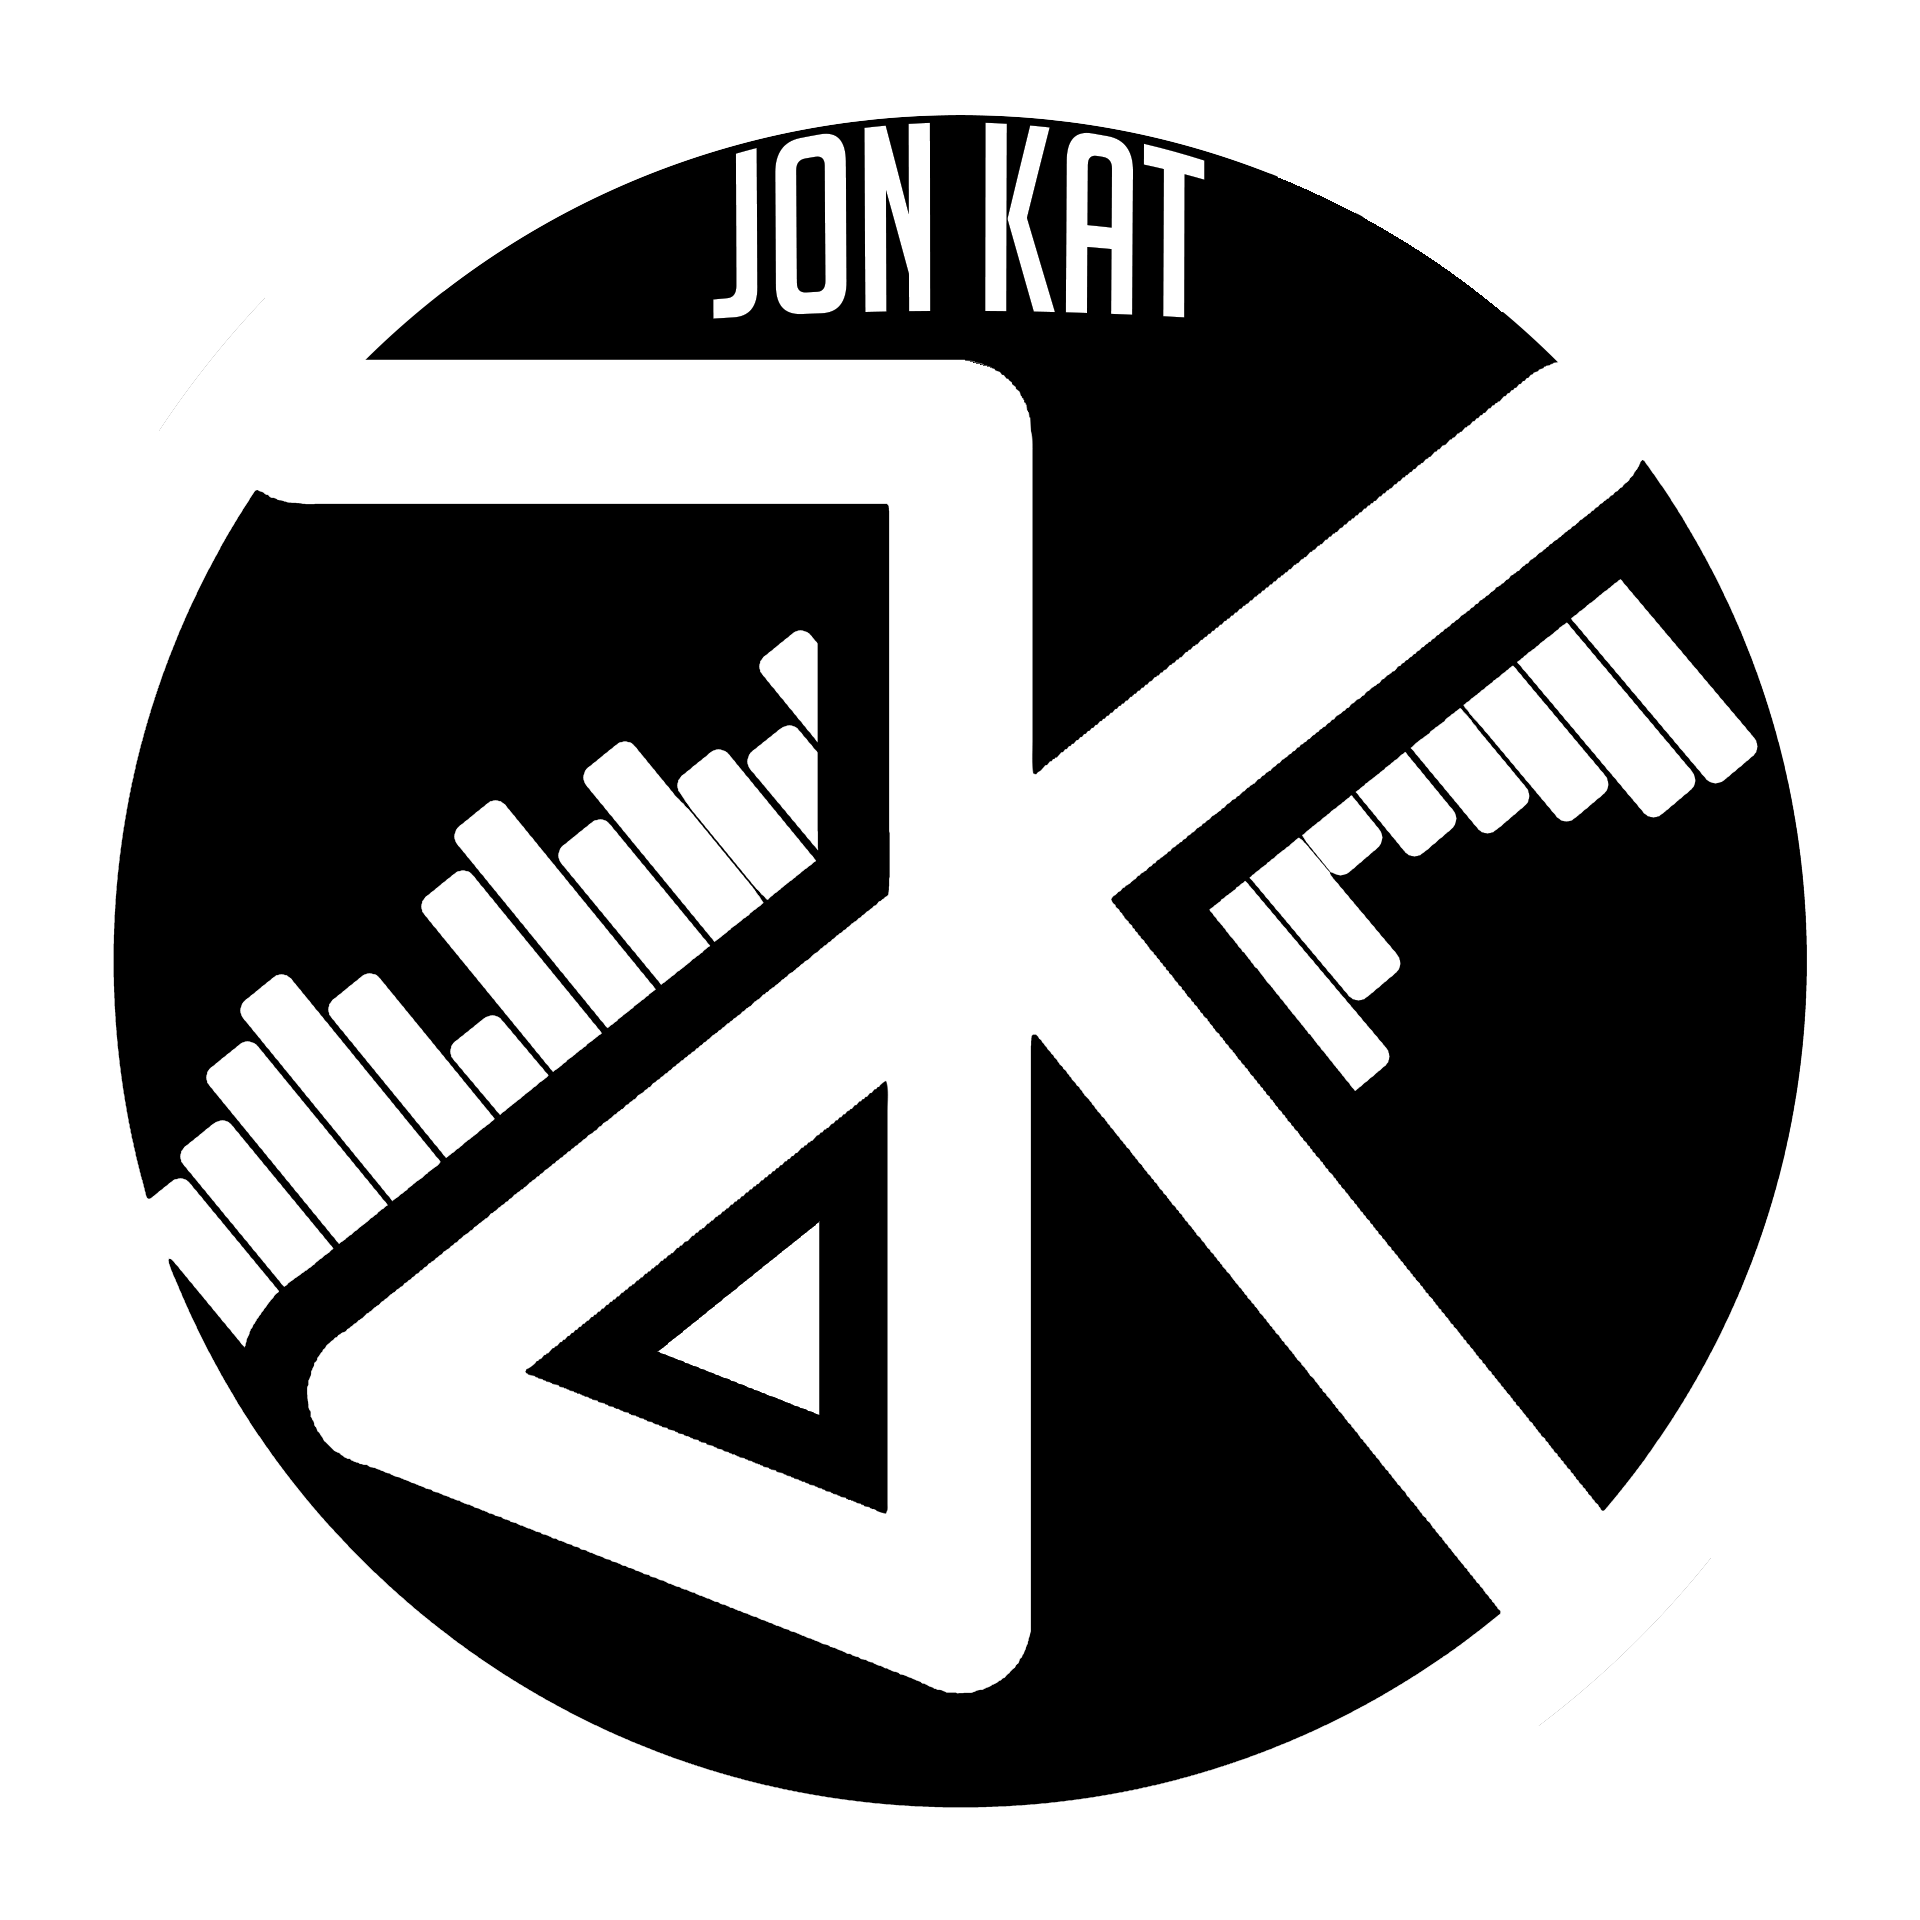 Jon Kat